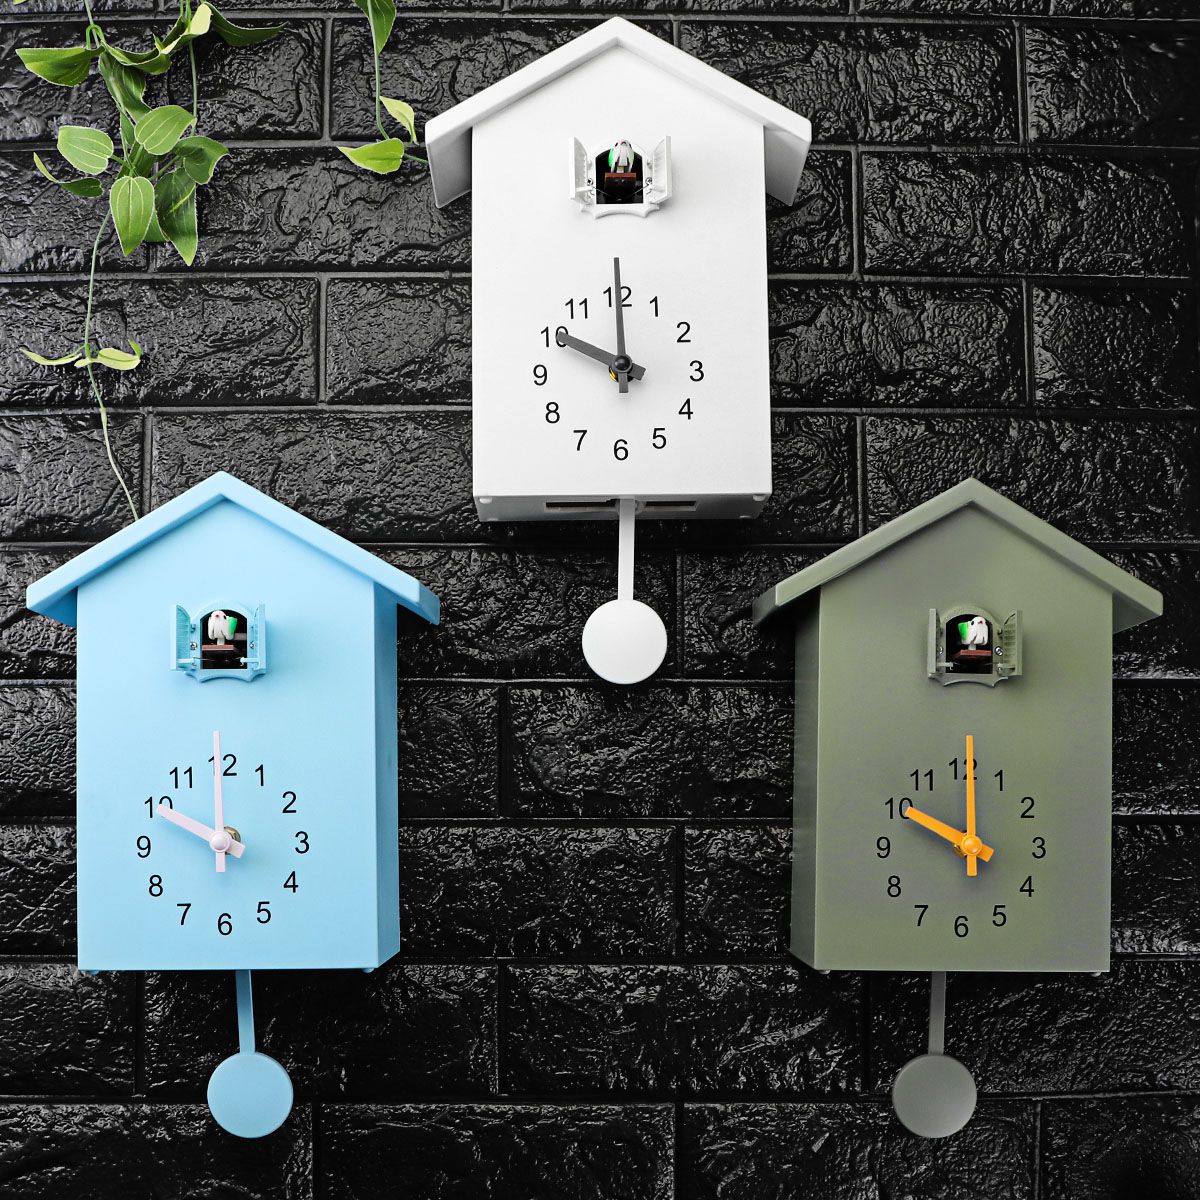 Cuckoo-Quartz-Wall-Clock-Modern-Bird-Home-Living-Room-Hanging-Watch-Office-Decor-1614868